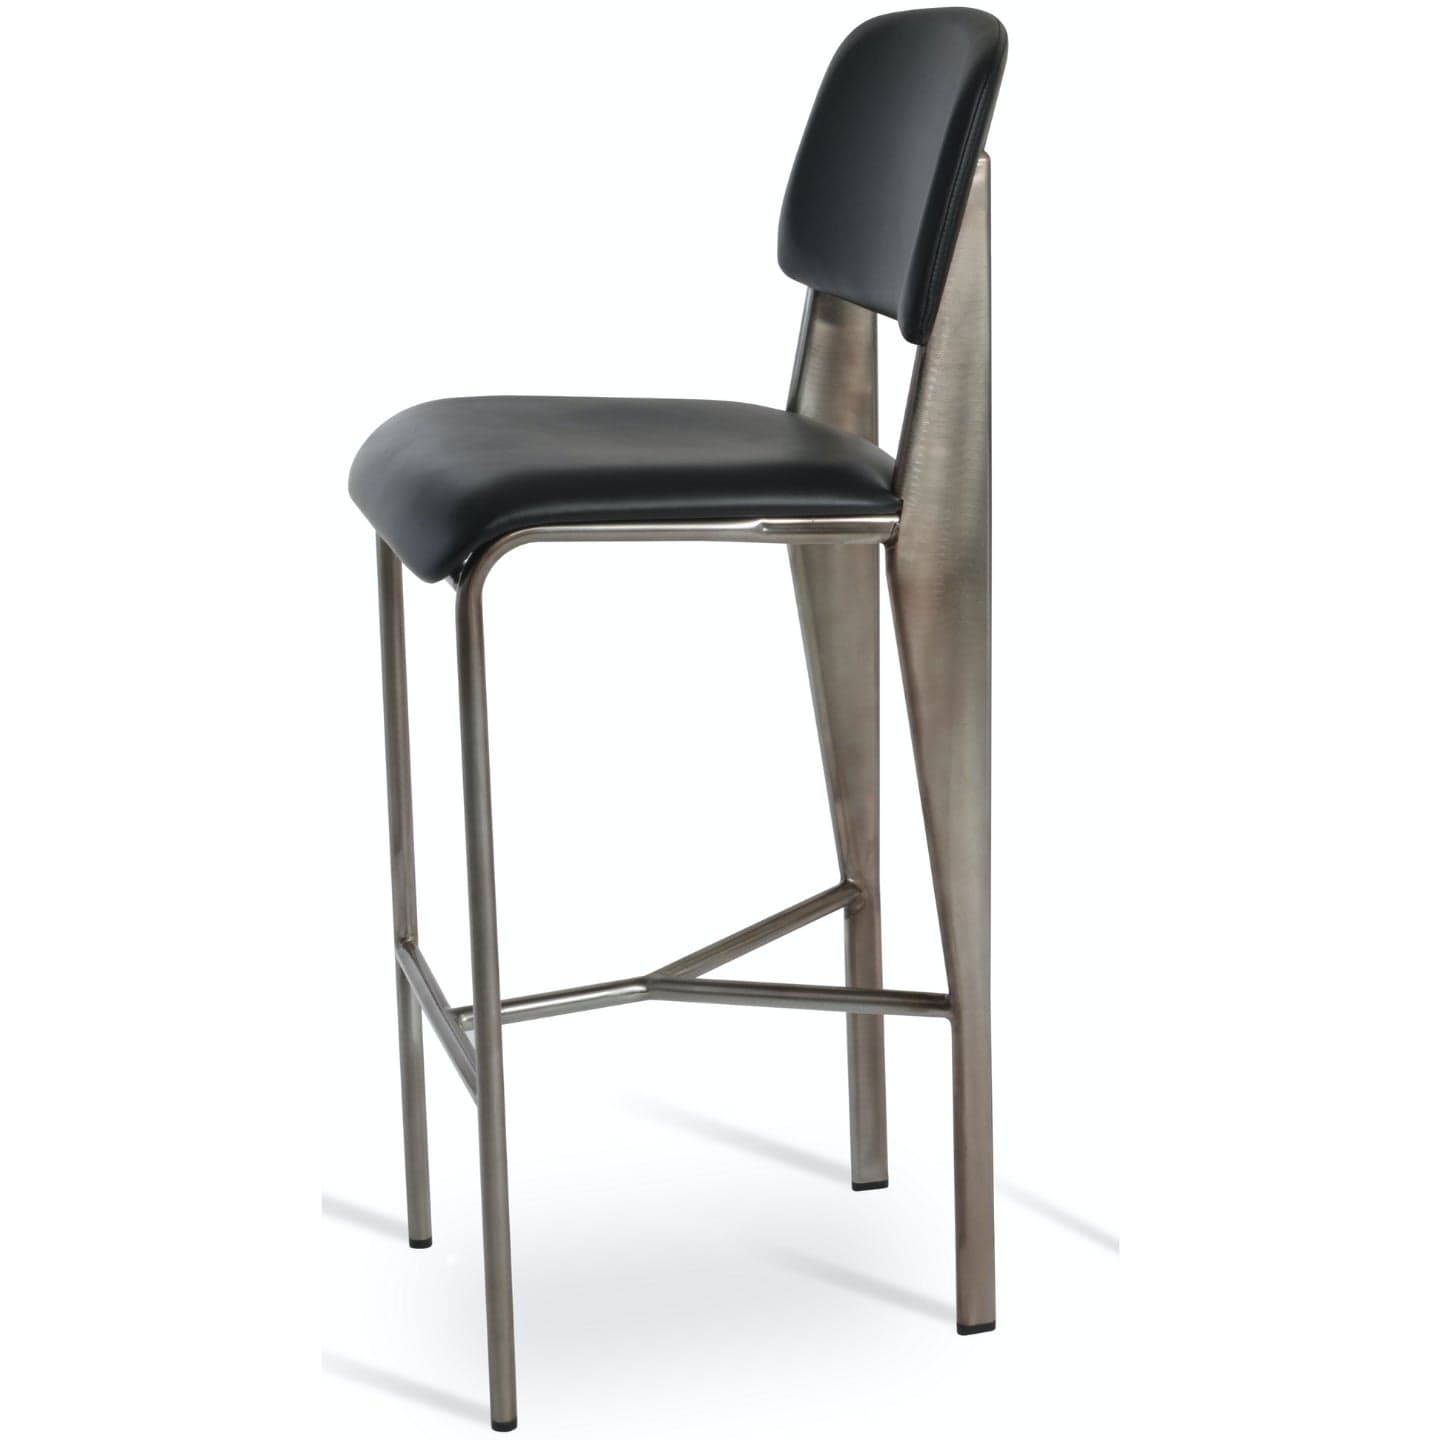 Soho Concept prouve-industrial-metal-base-wood-seat-cuisine-comptoir-tabouret-en-noir